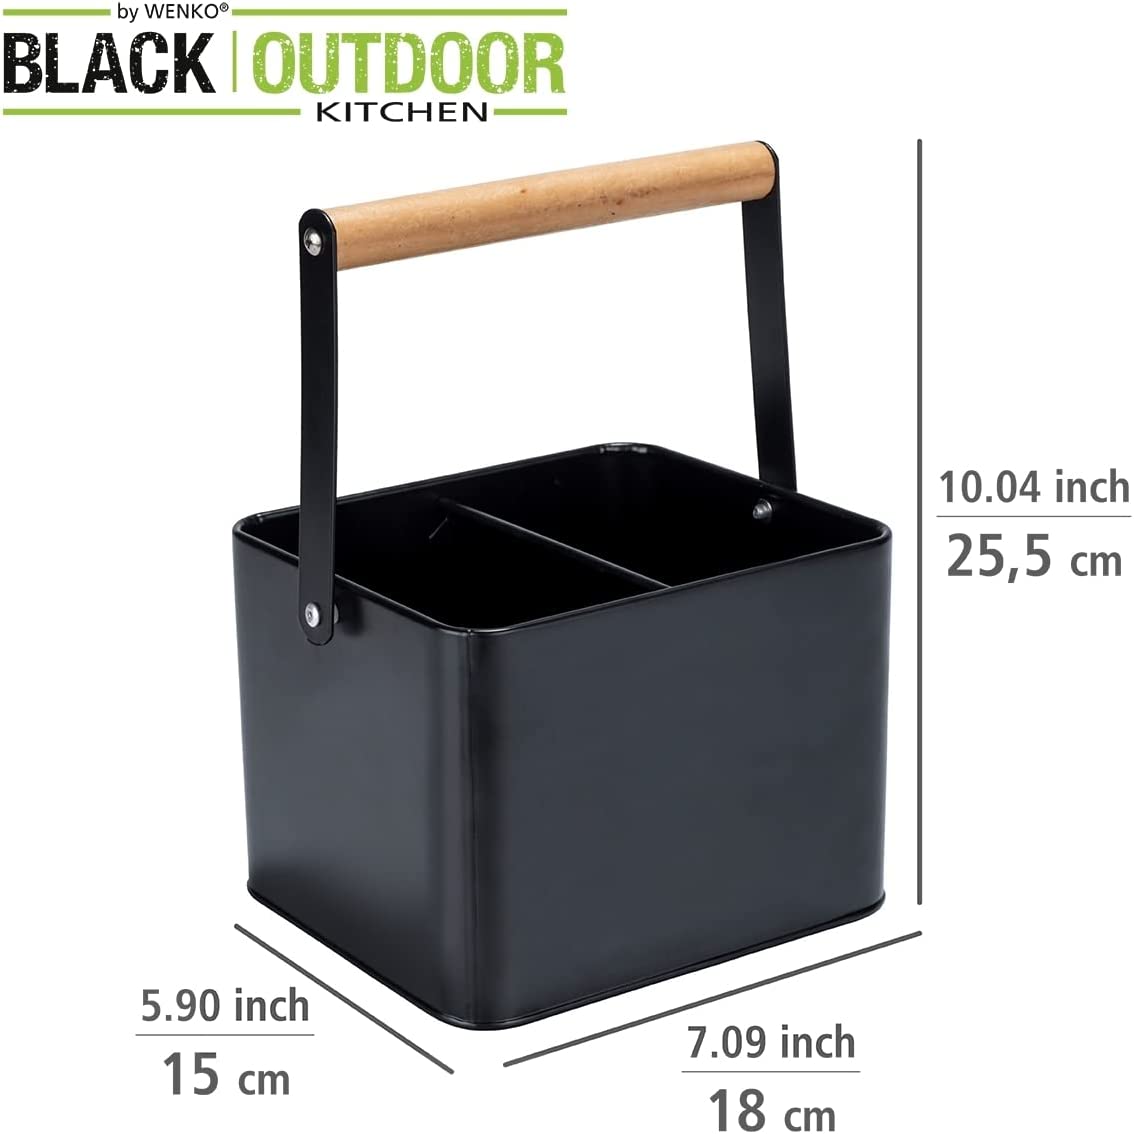 Utensilienkorb Baco, Black Outdoor Kitchen Zubehör, robuster Tragekorb aus pulverbeschichtetem schwarzem Metall mit flexiblem Holzgriff, ideal für den Transport von Saucen, 18 x 25,5 x 15 cm